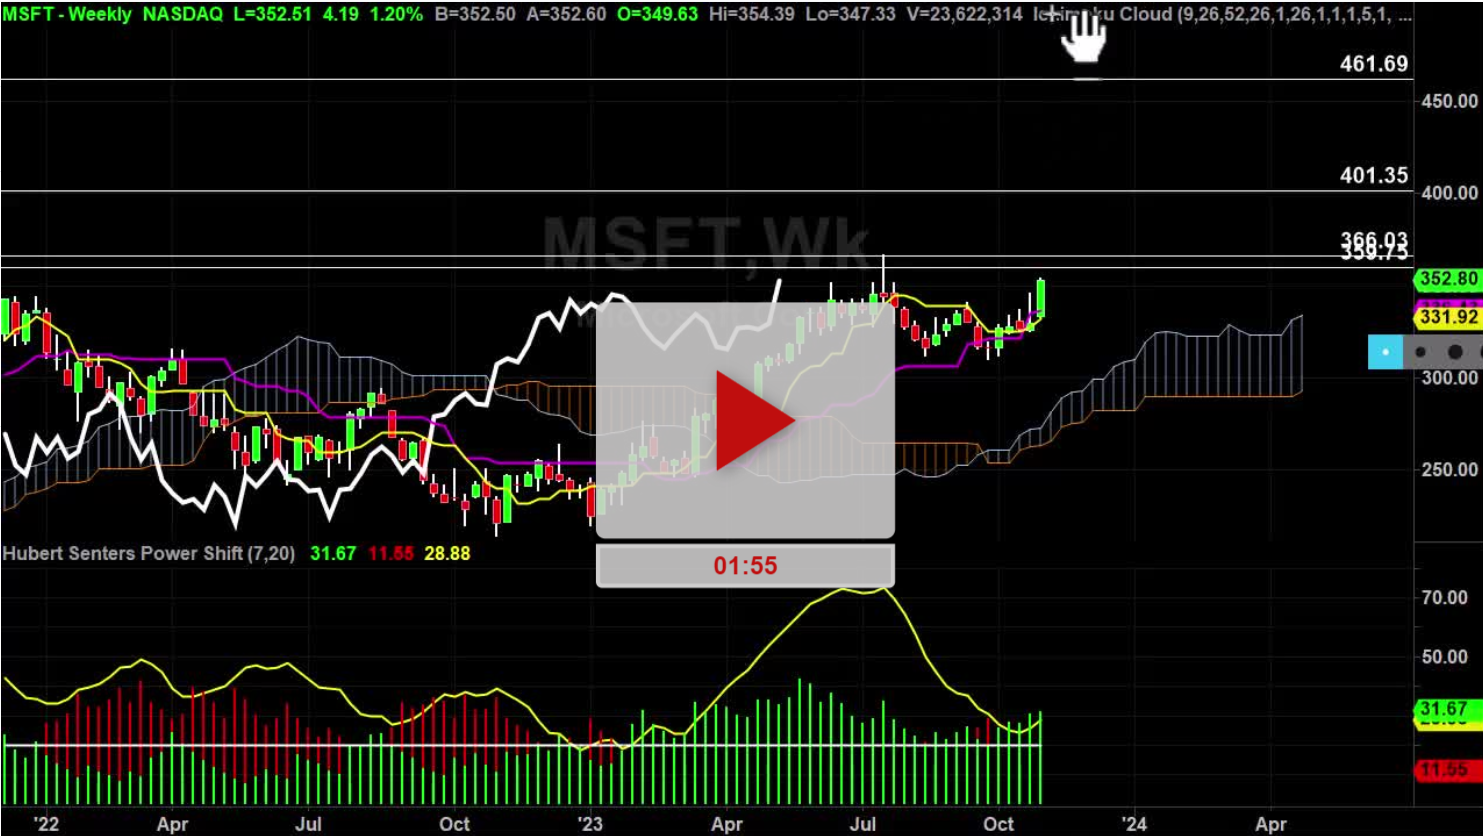 MSFT Stock Daily Chart Analysis Part 2 - Hubert Senters